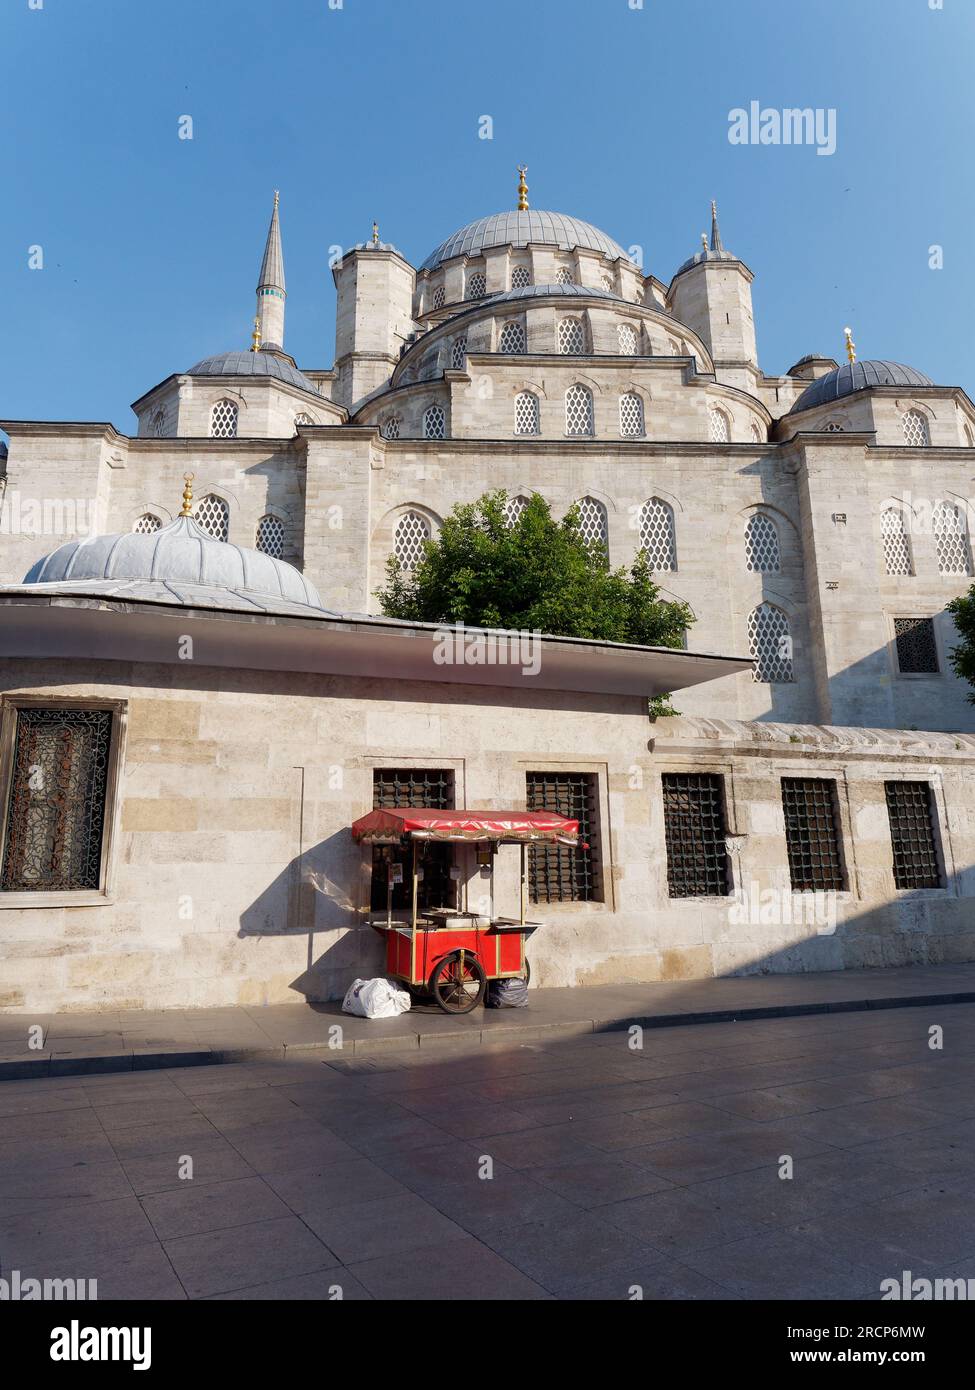 Yeni Cami Moschee (neue Moschee) an einem Sommermorgen mit einem roten Verkaufswagen, Istanbul, Türkei Stockfoto